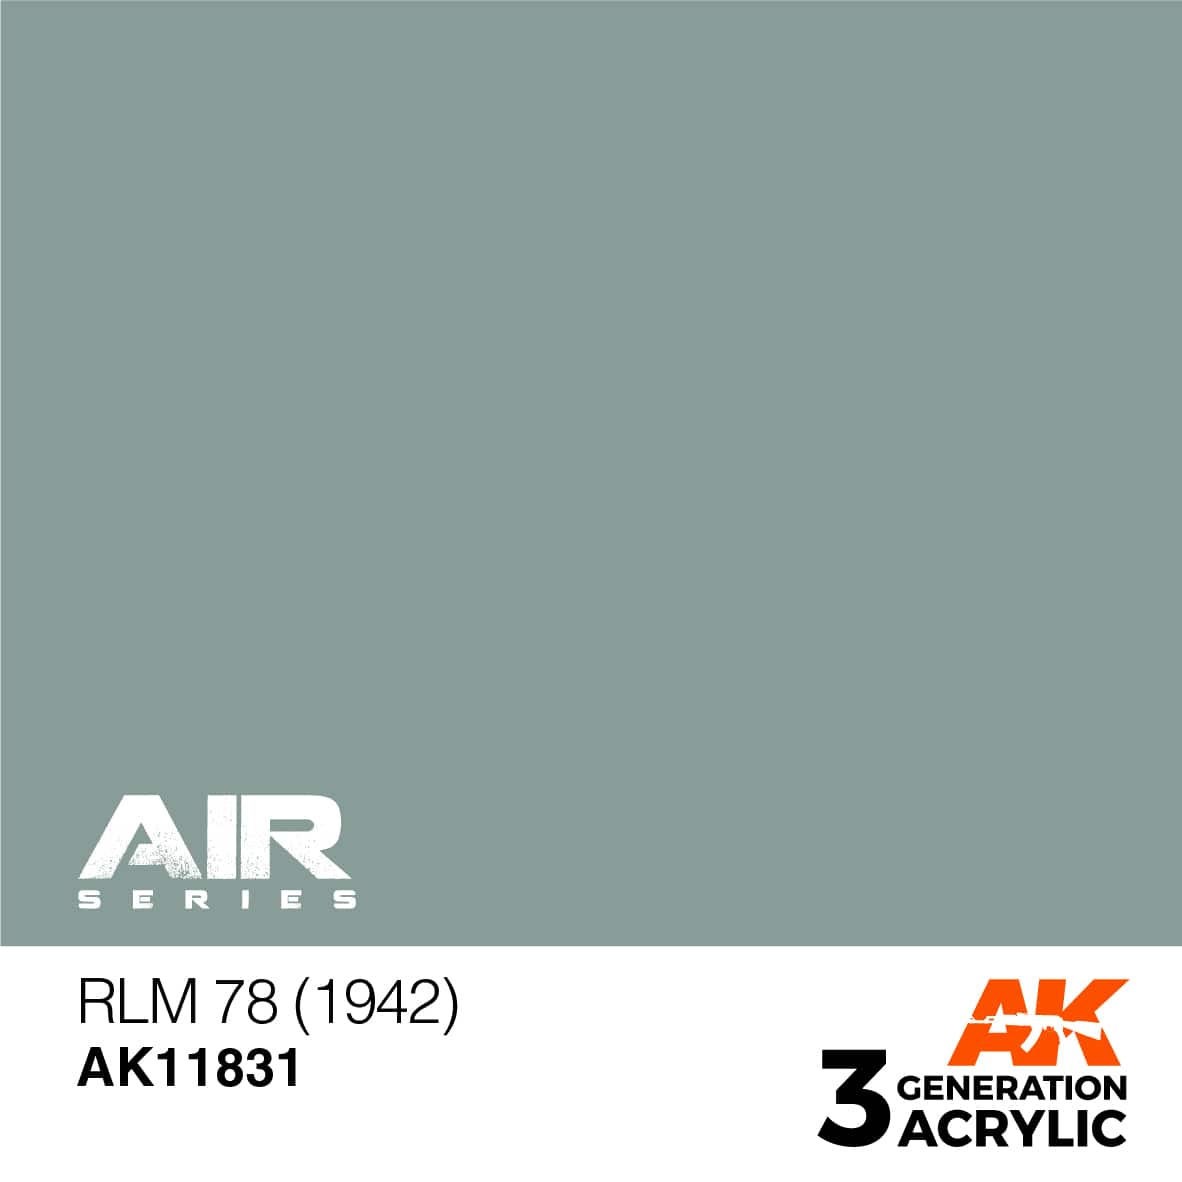 AK RLM 78 (1942) – AIR 7ml